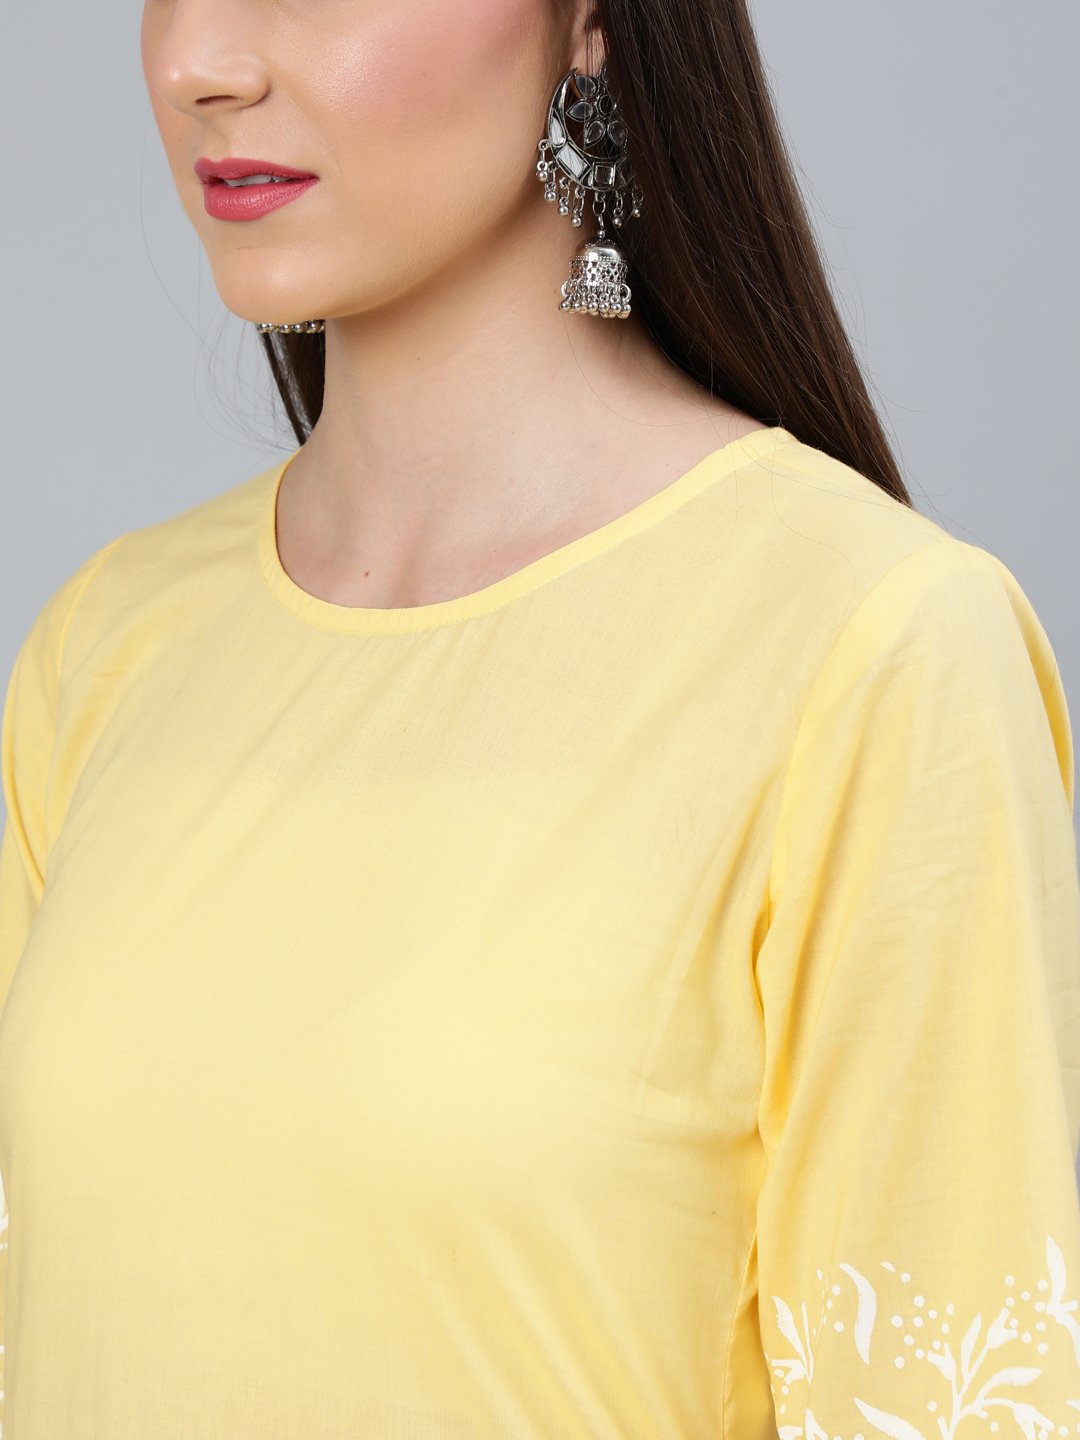 Women's Yellow Block Printed Straight Kurta With Off White Plazo - Nayo Clothing